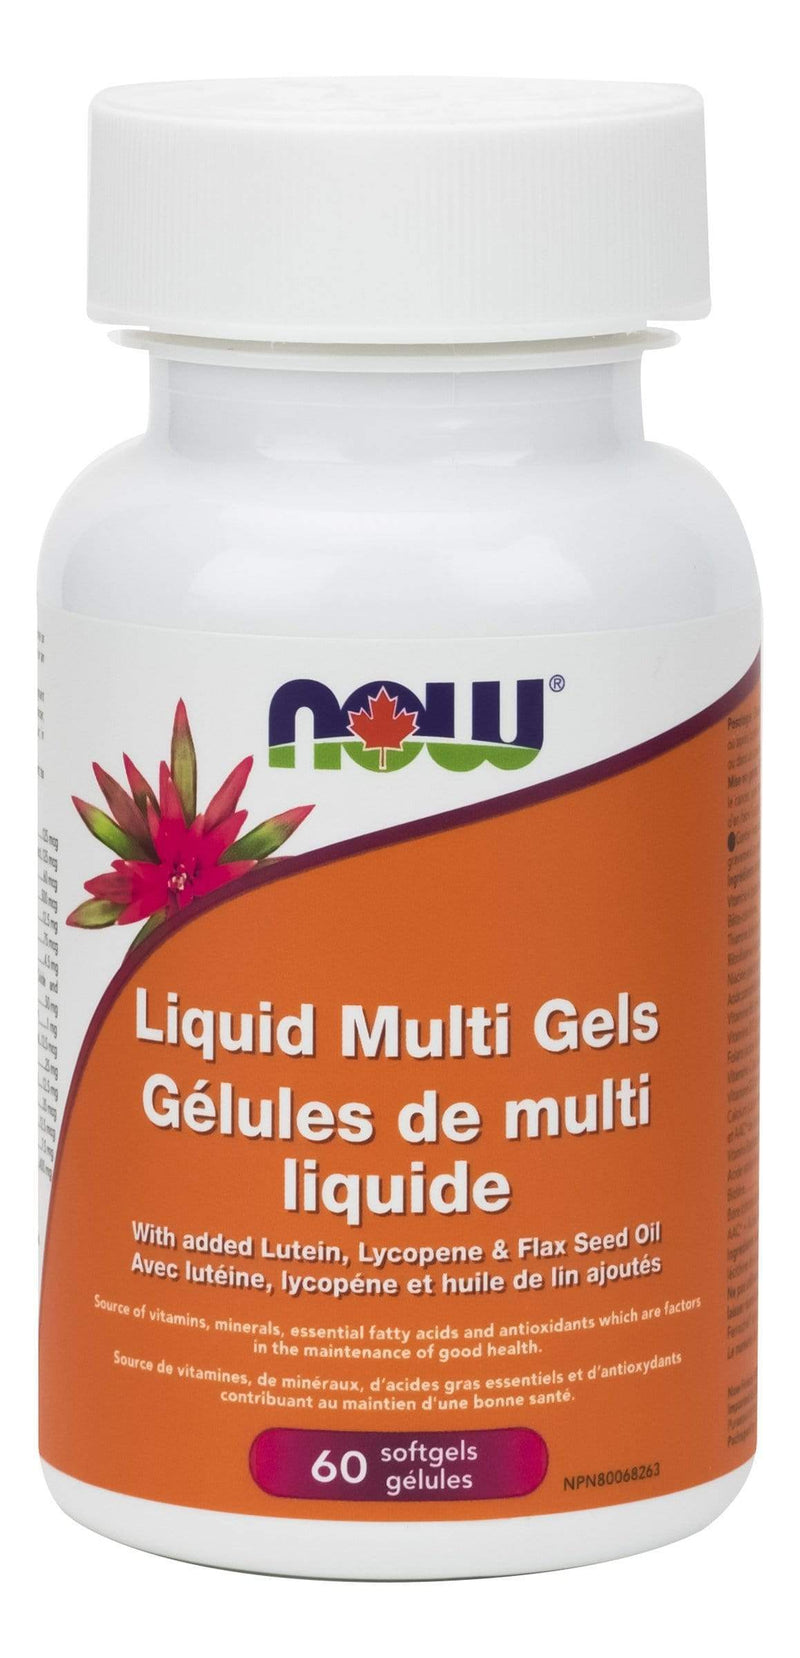 NOW Liquid Multi Gels